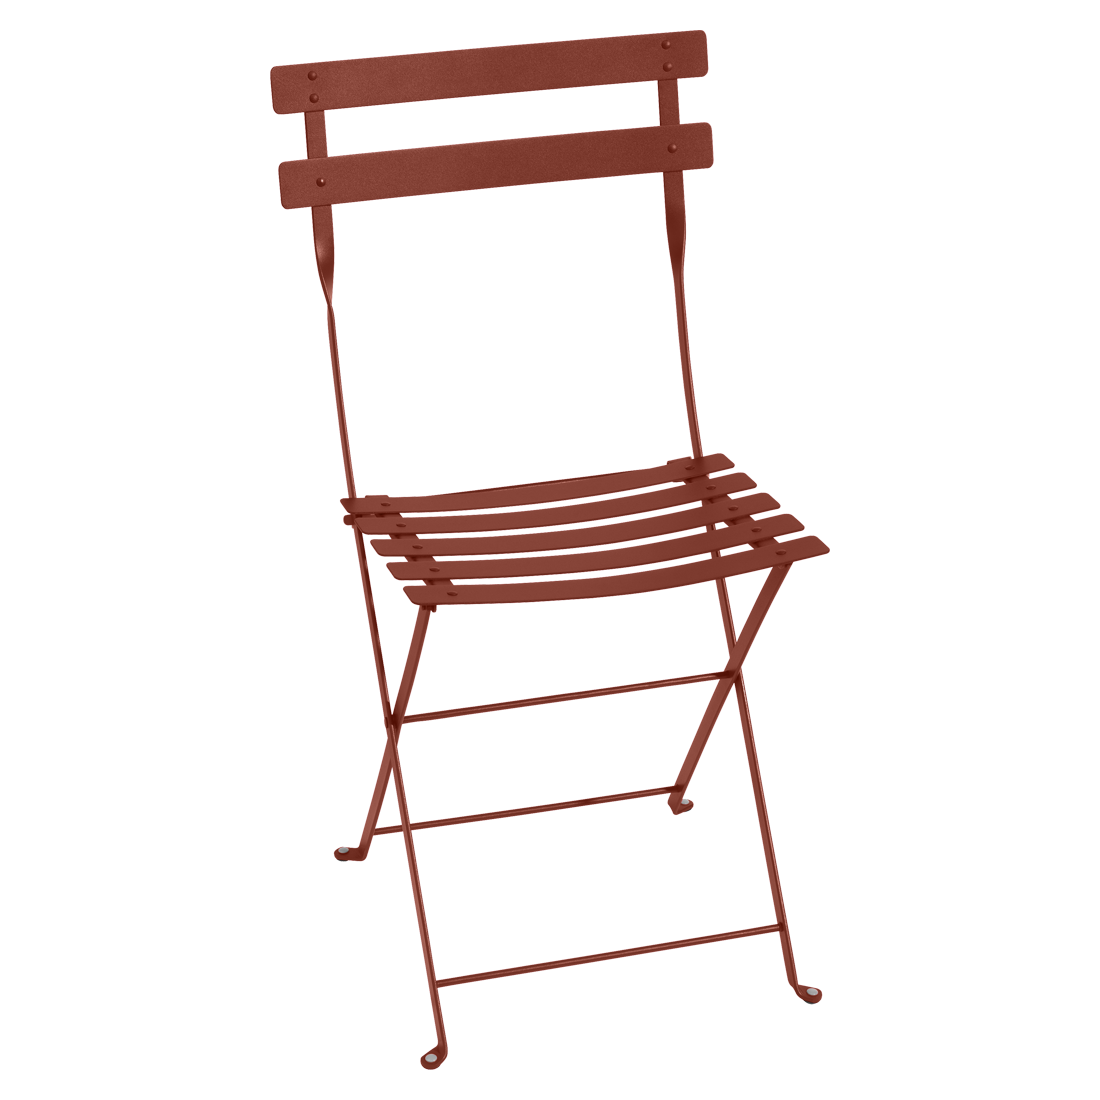 Zemitě červená kovová skládací židle Fermob Bistro Fermob